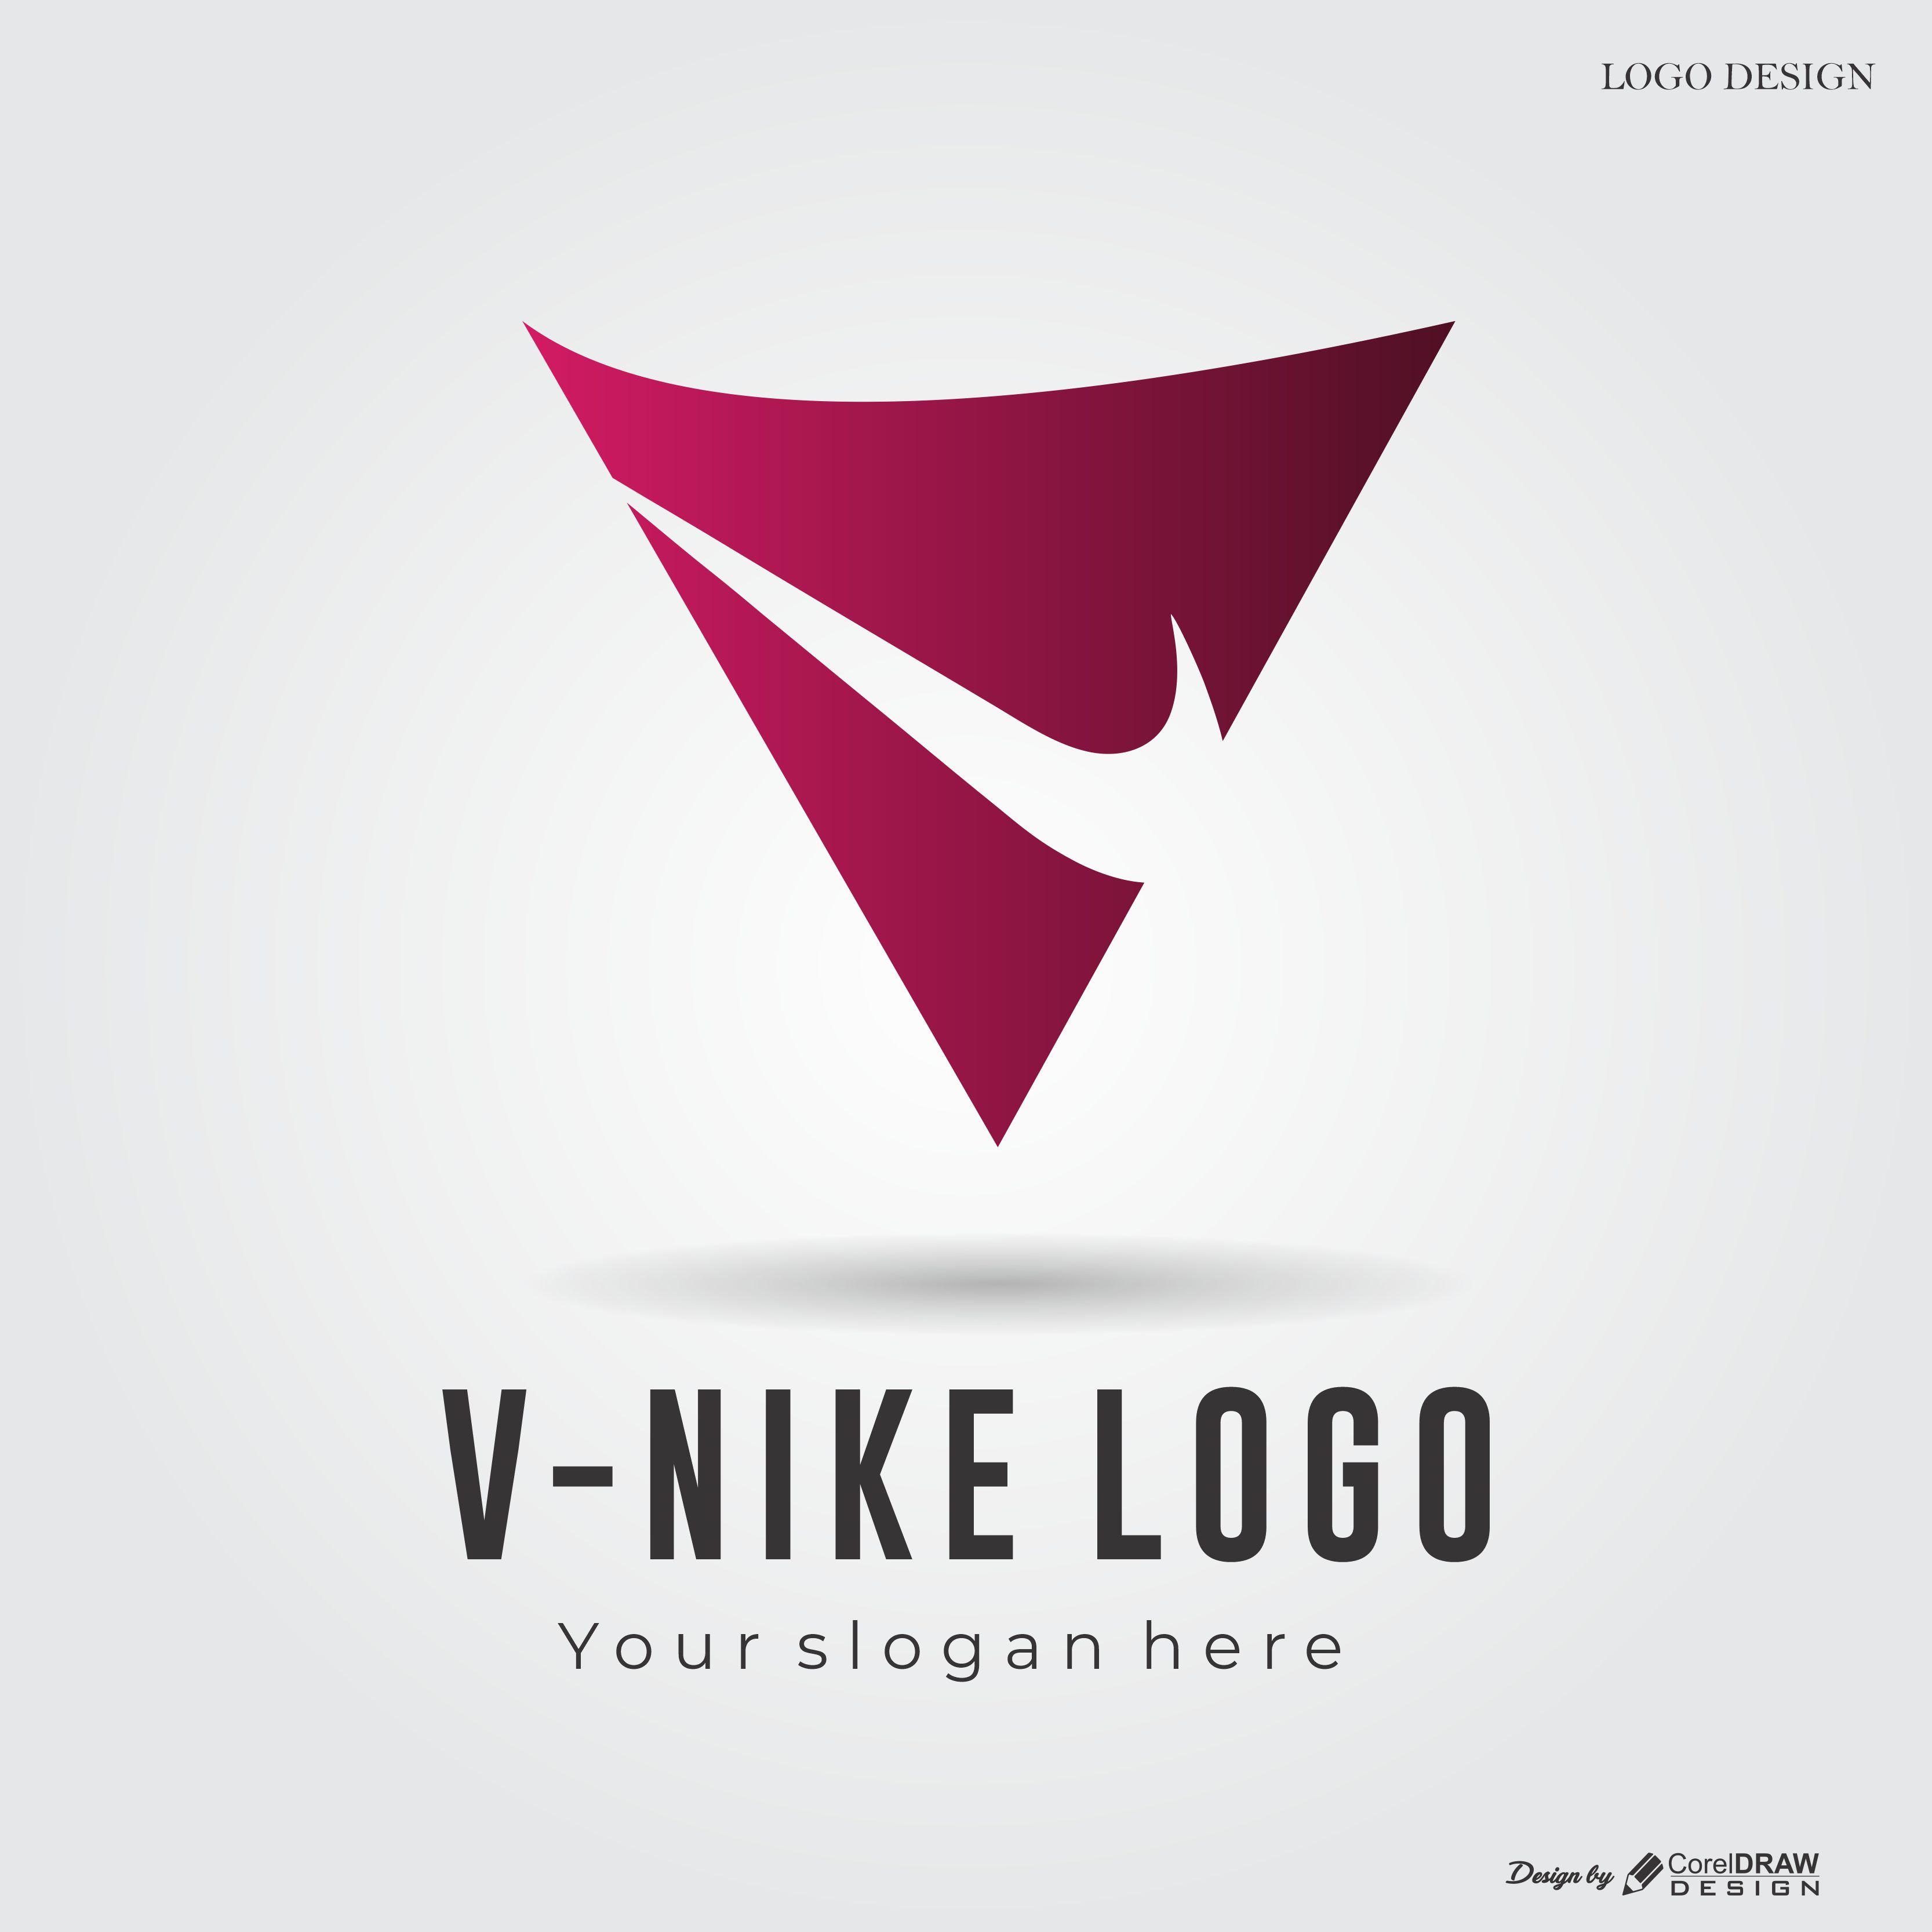 nike logo design